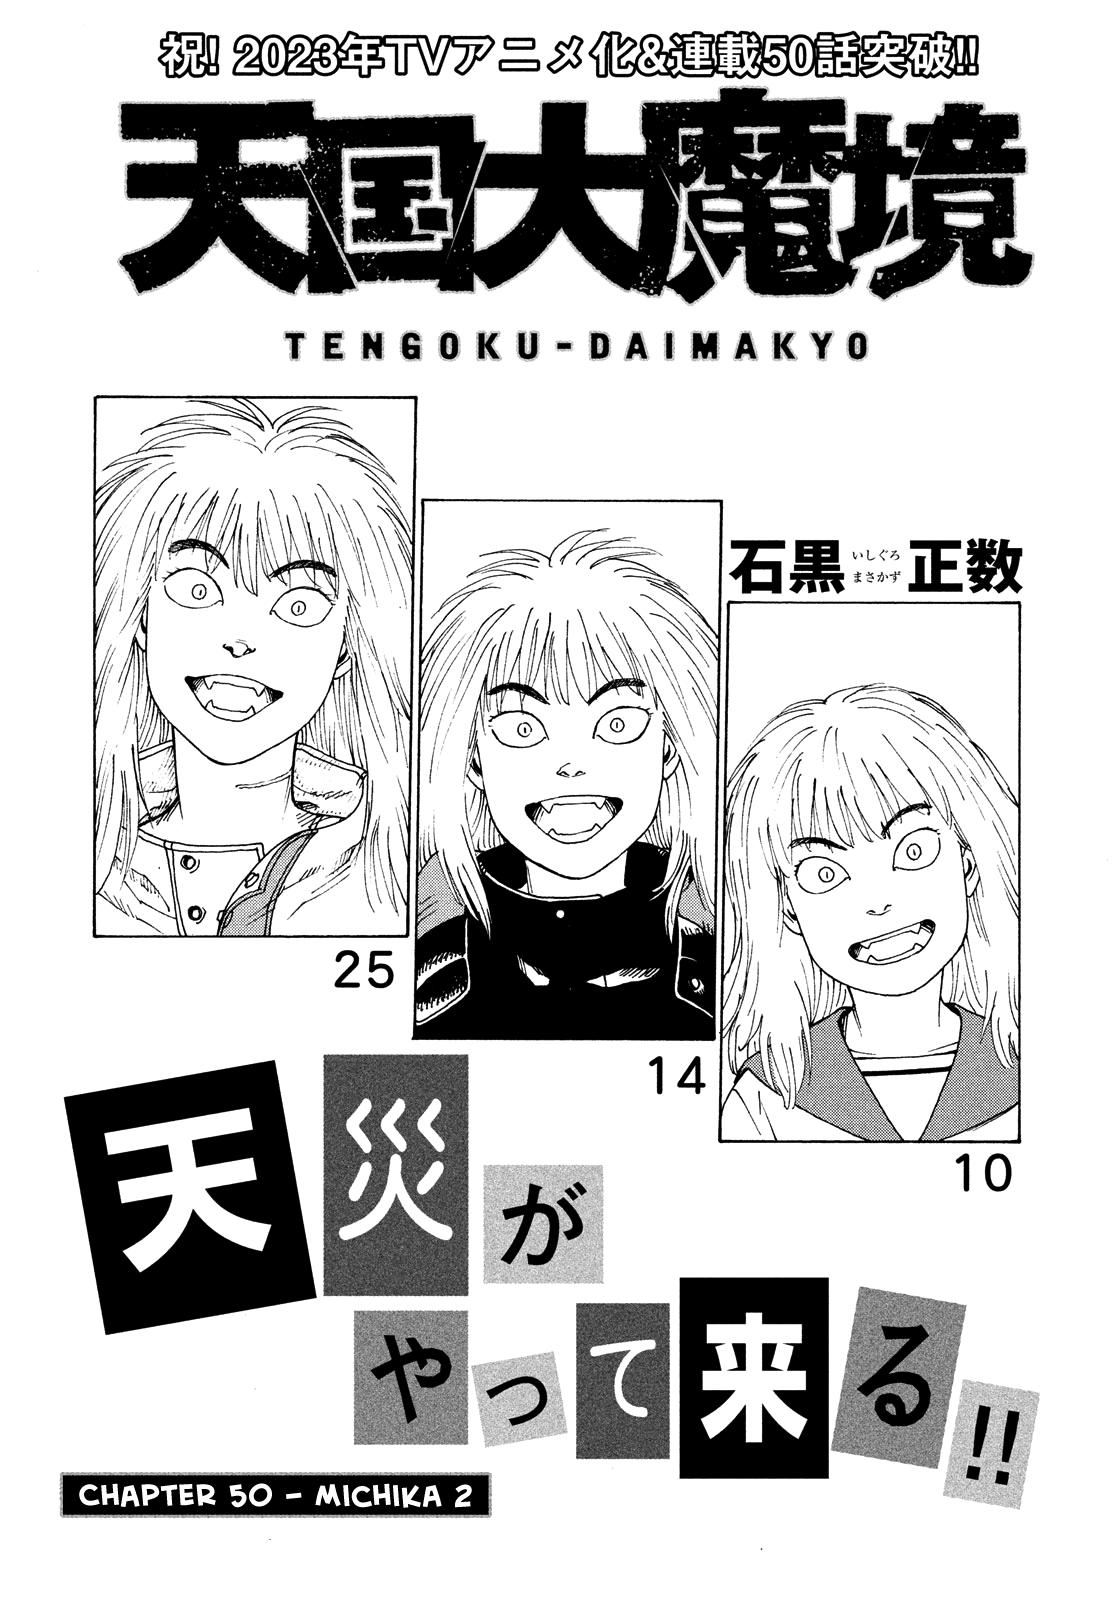 Tengoku Daimakyou Vol.9 Chapter 50: Michika ➁ page 2 - Mangakakalot